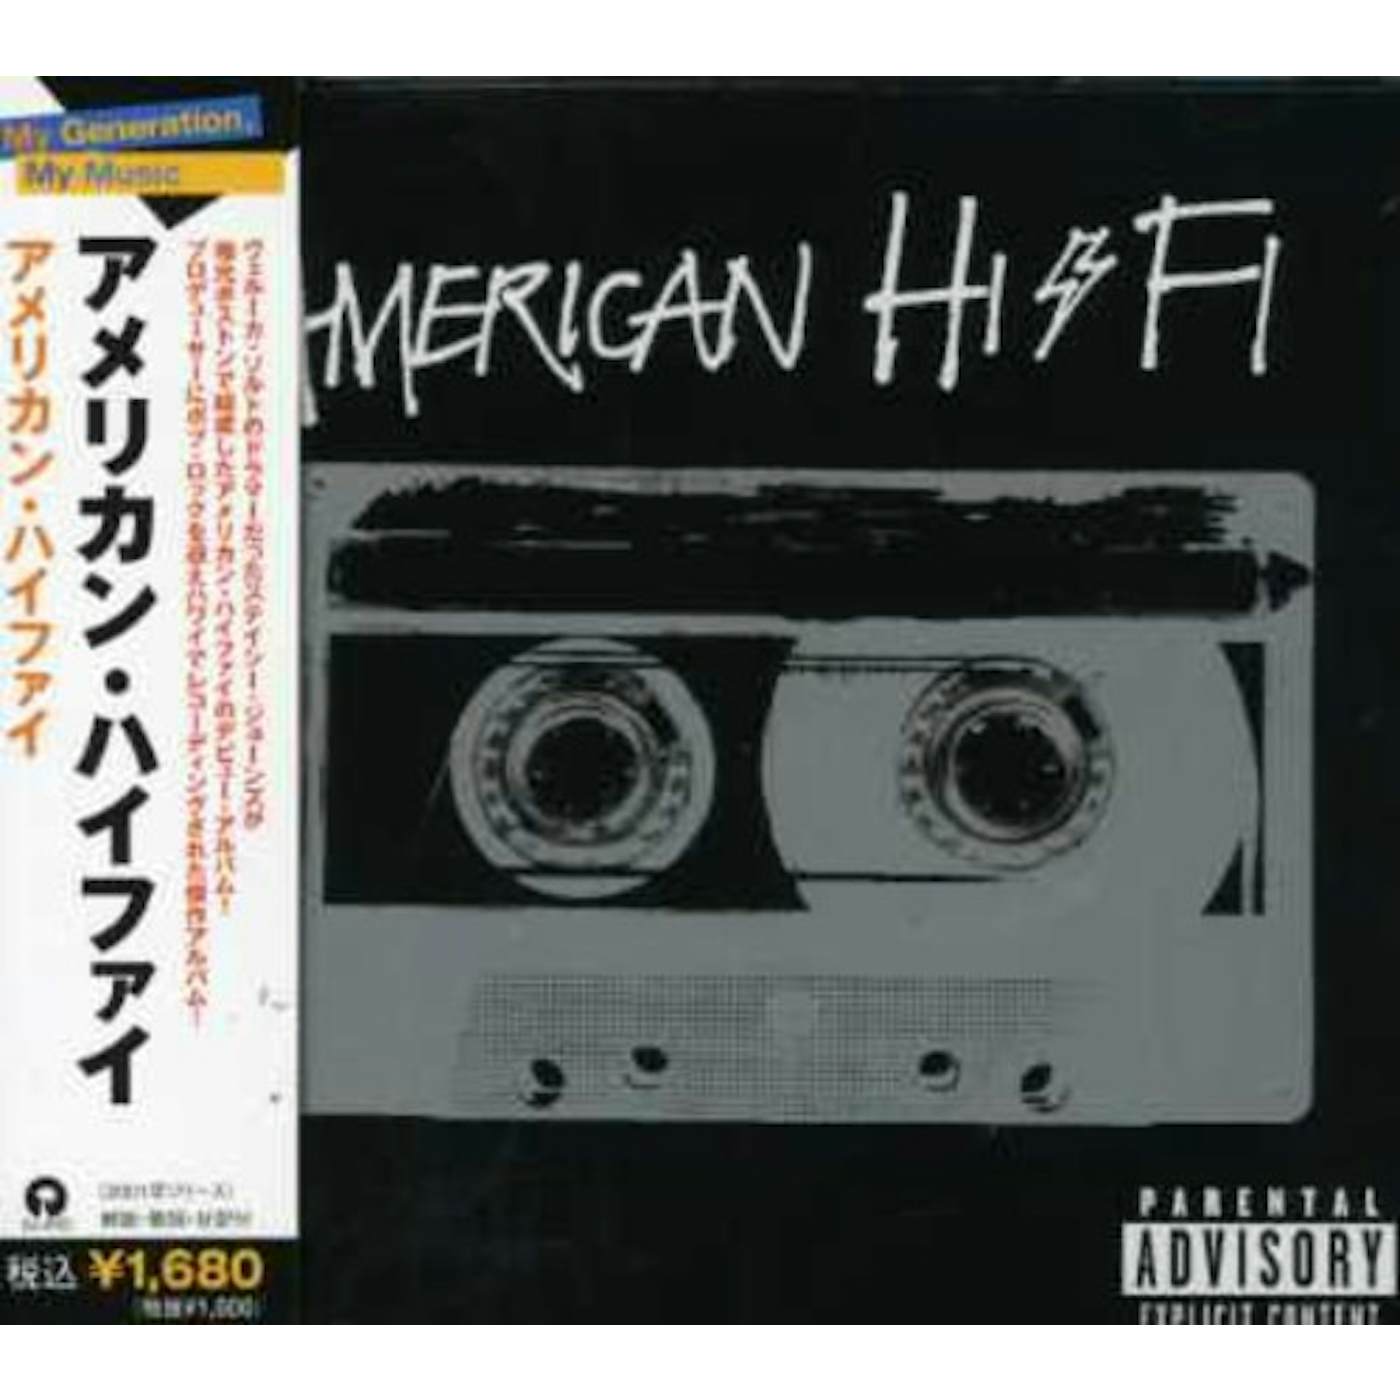 AMERICAN HI-FI CD